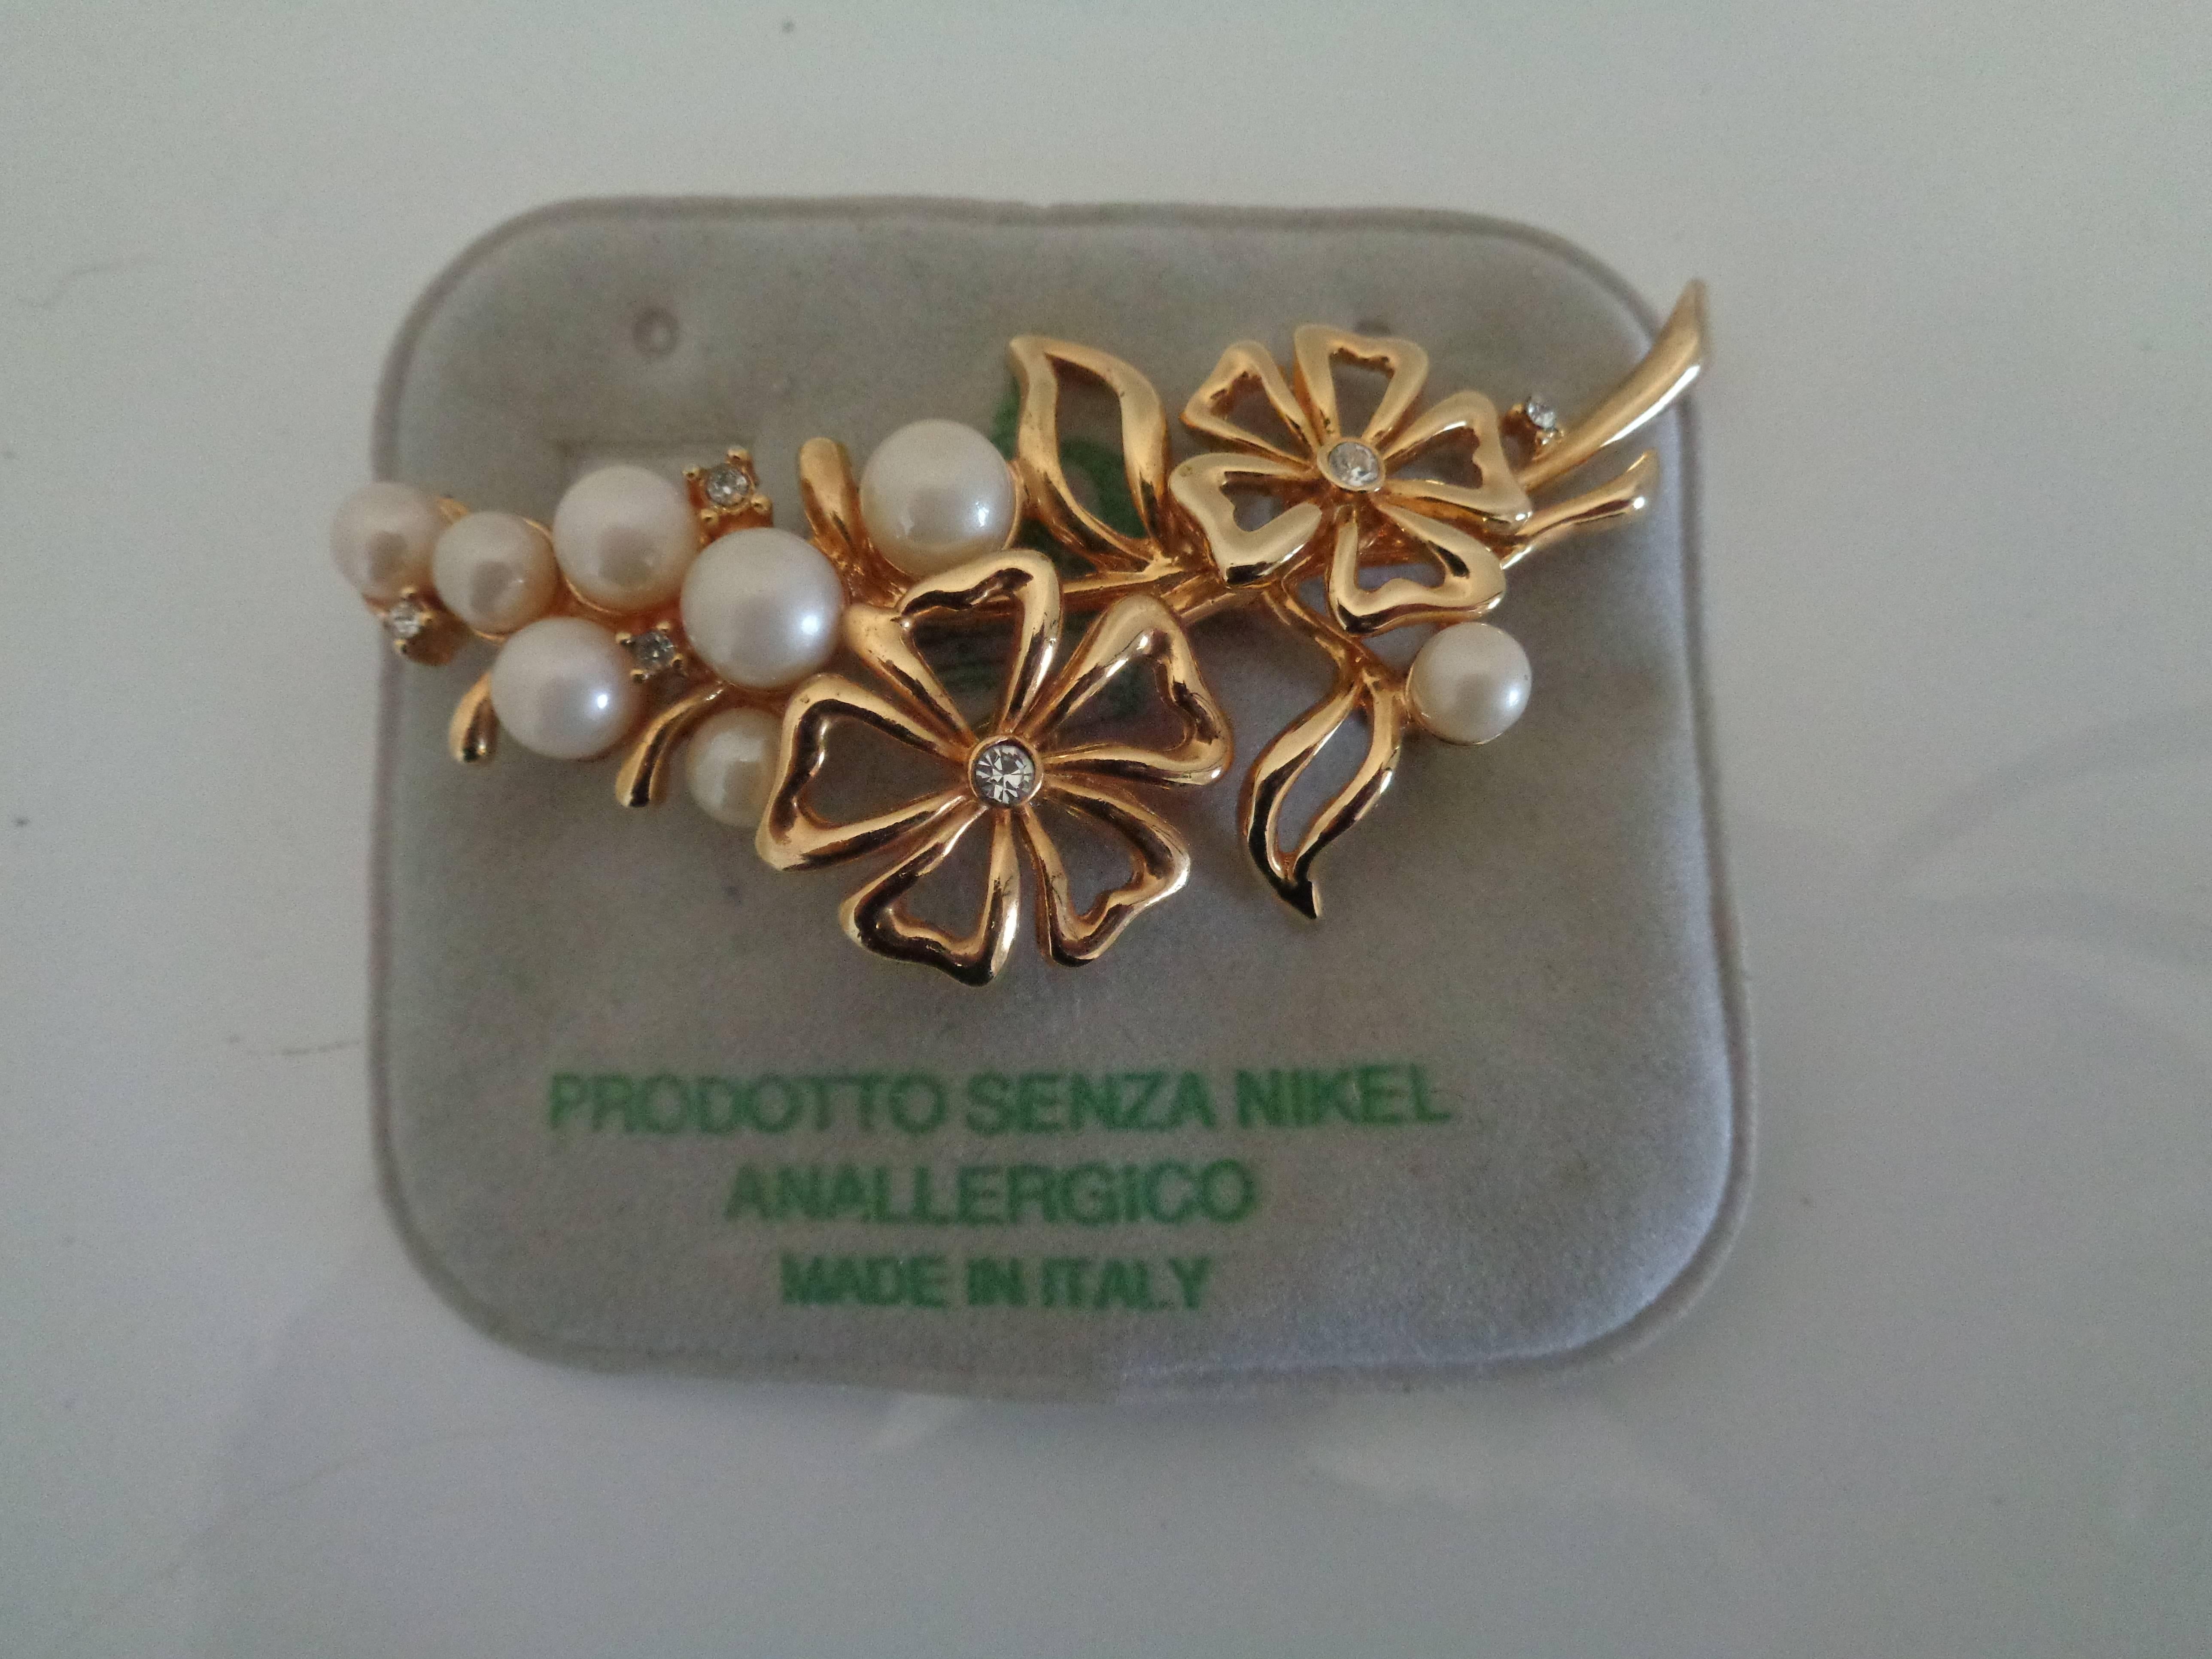 Broche en fausses perles de couleur or

entièrement fabriqué en Italie 

mesures : 7cm

